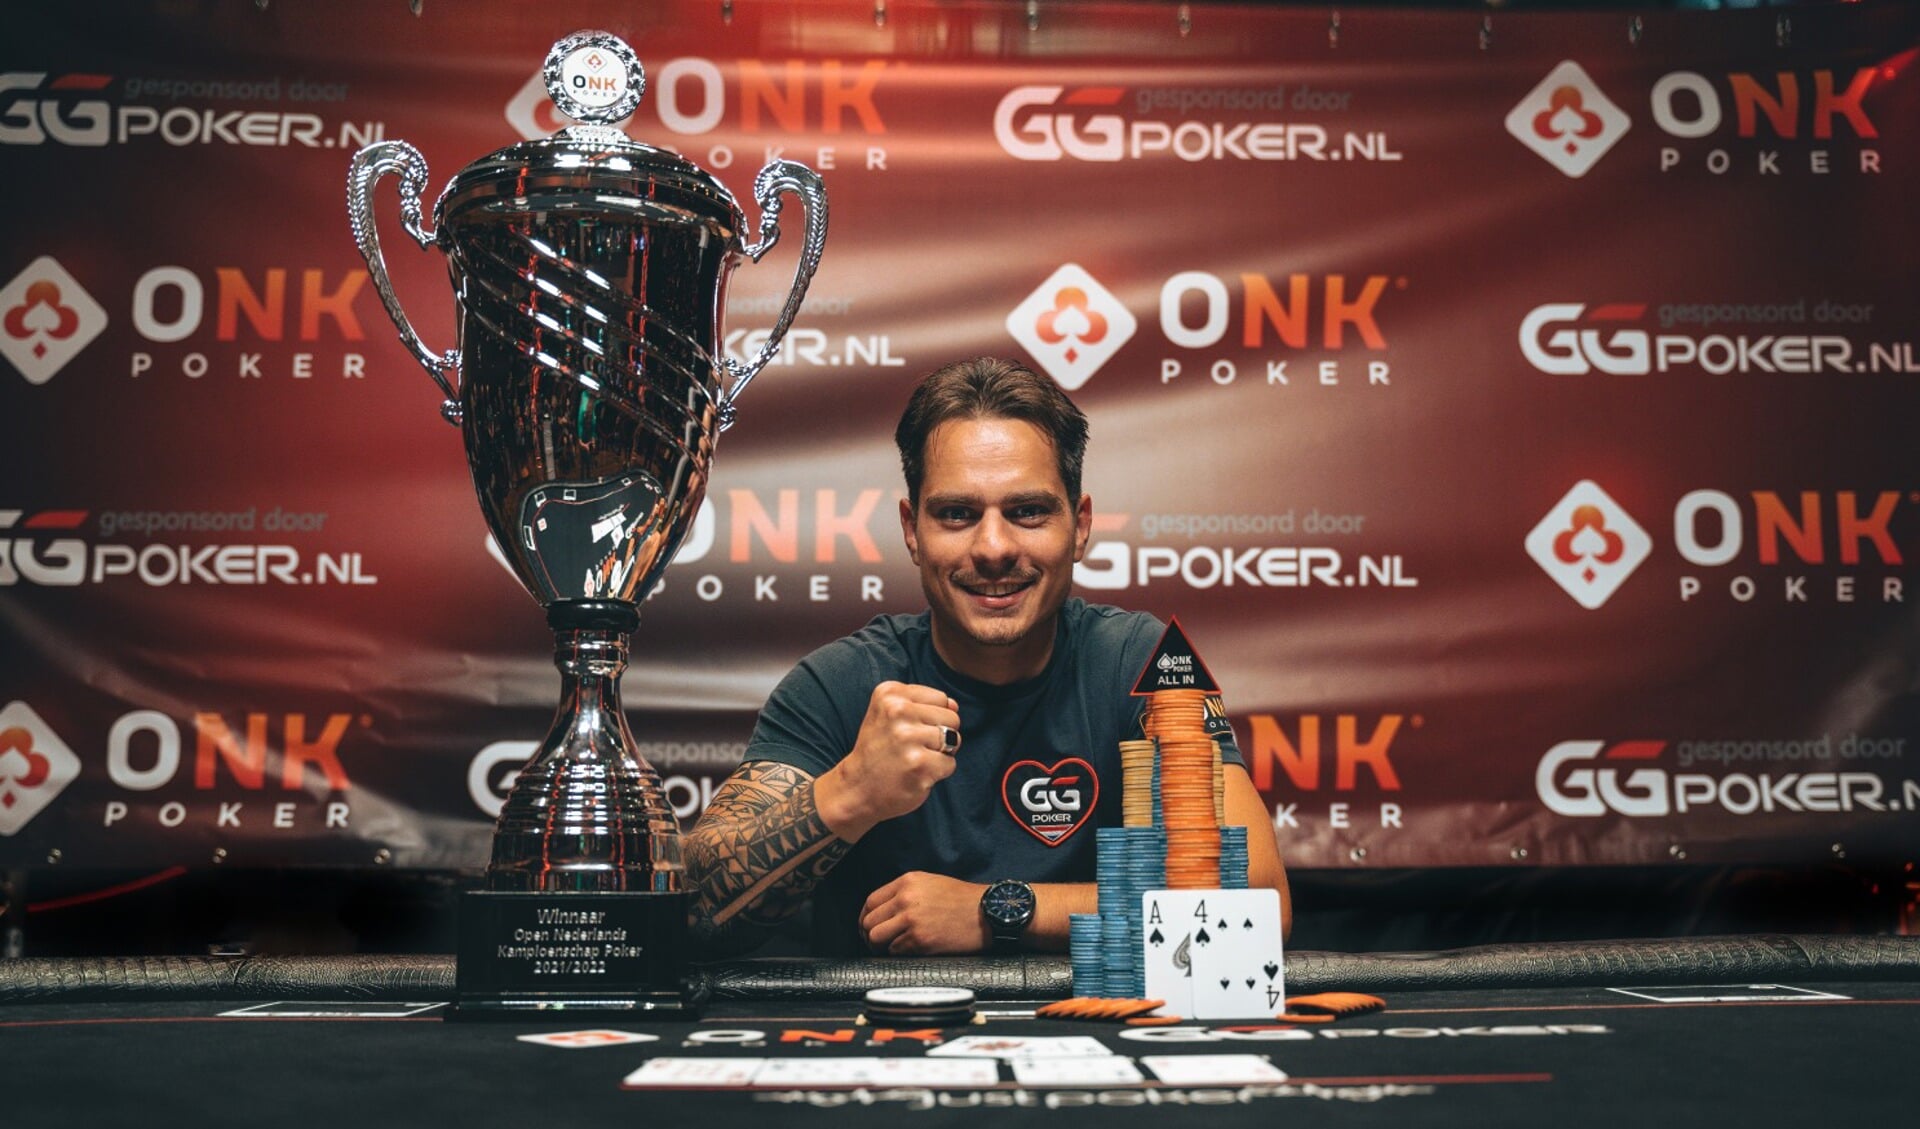 Vincent Vos is de Pokerkampioen van Nederland 2021/2022